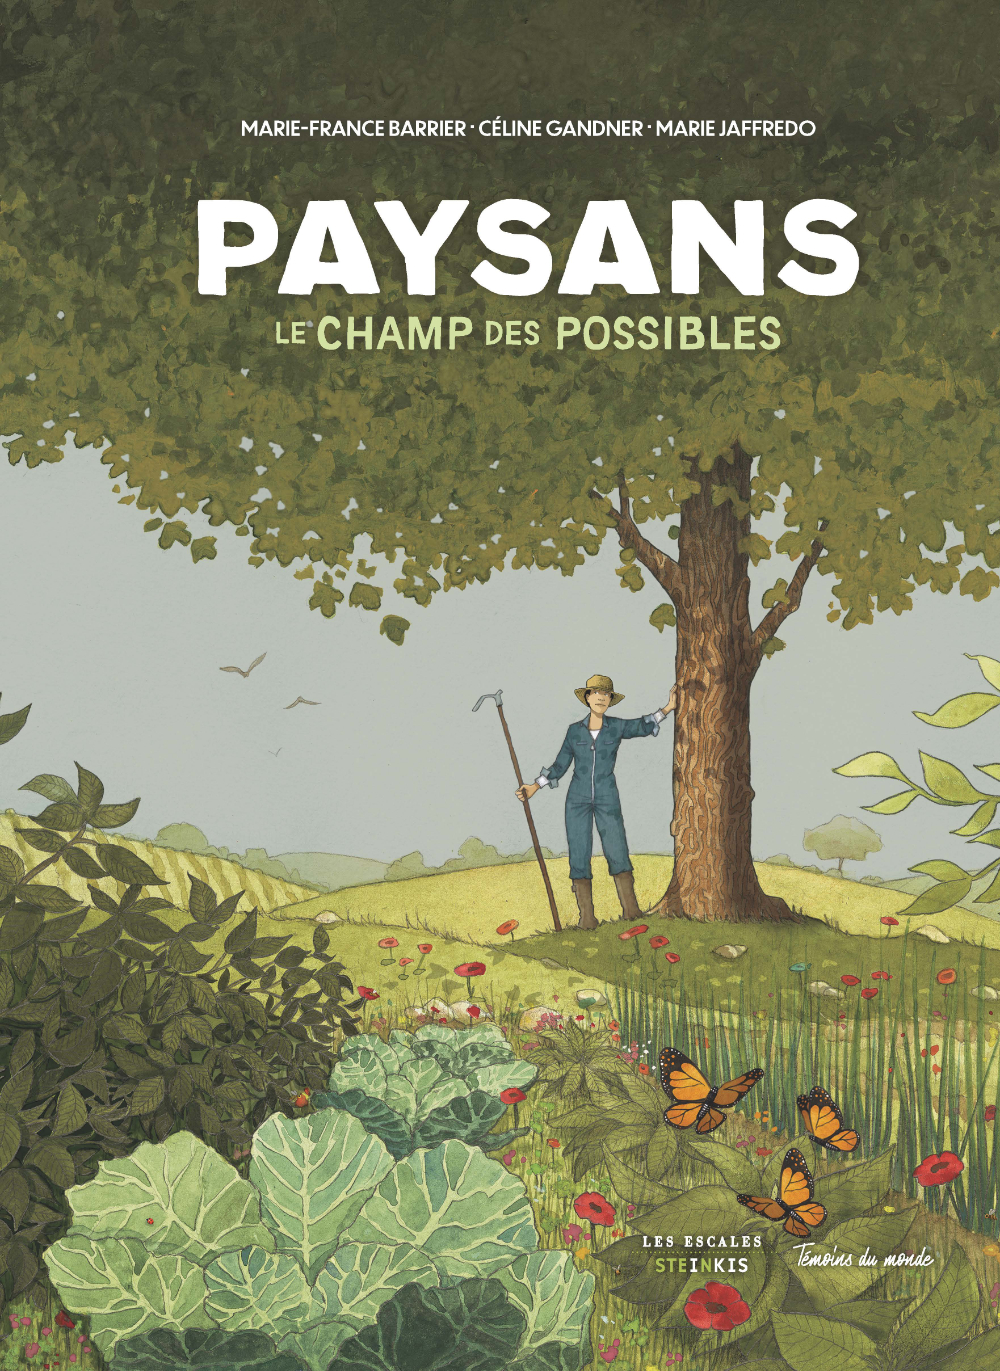 La couverture du livrePaysans, le champ des possibles, par Marie-France Barrier, Céline Gandner et Marie Jaffredo (Steinkis)